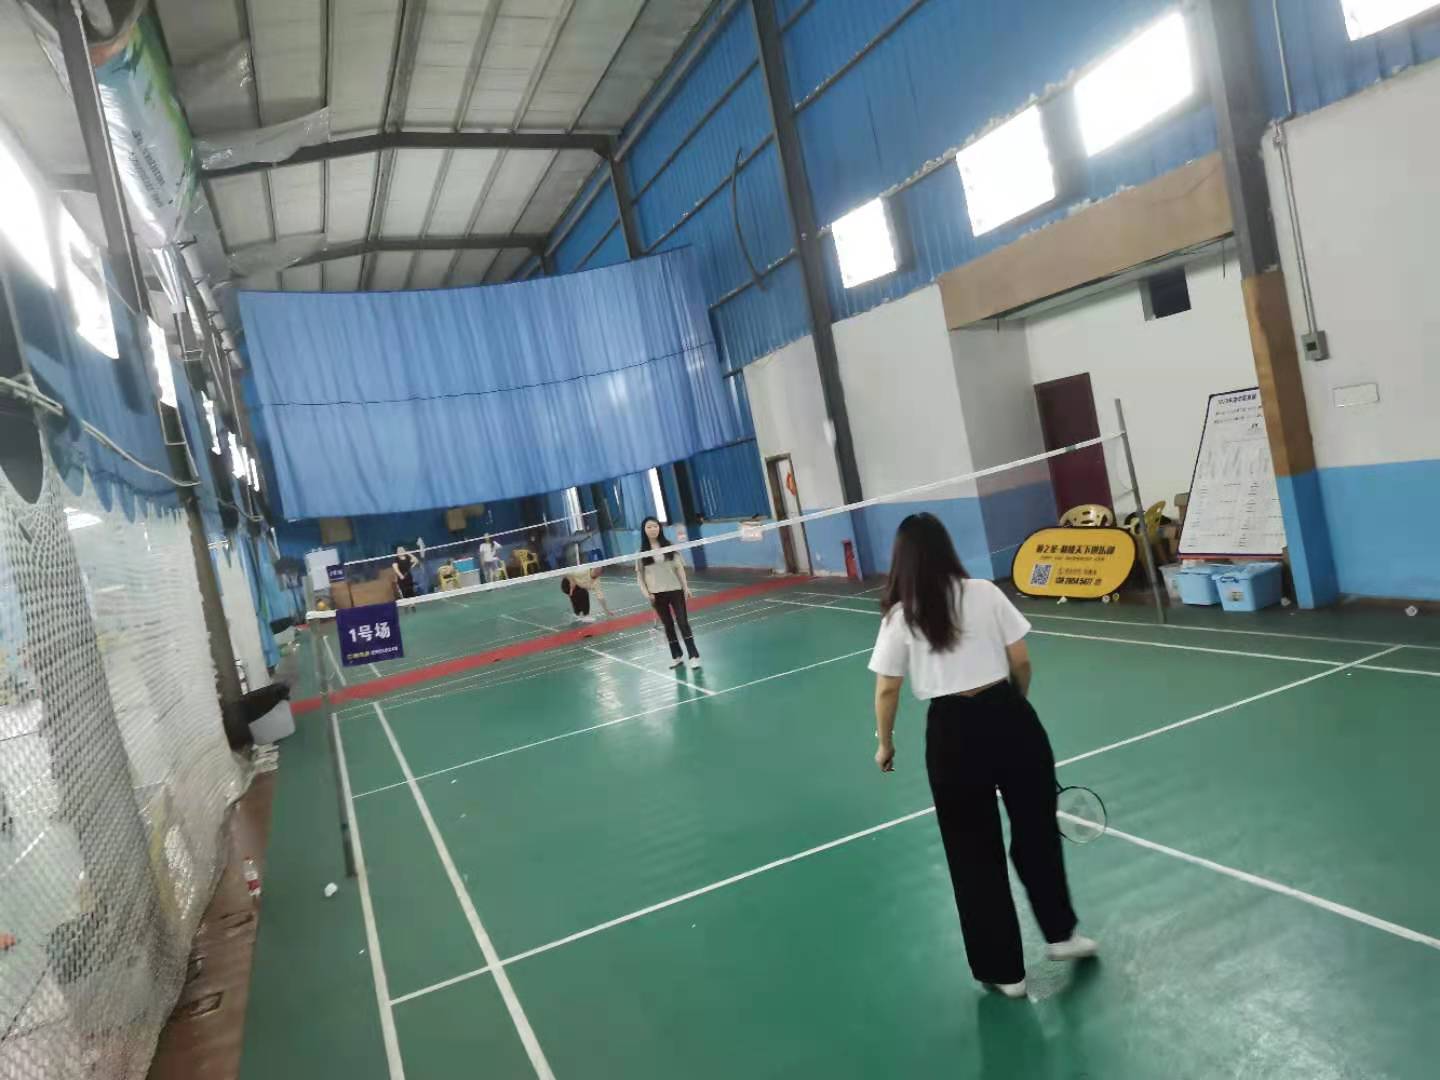 Badminton lehiaketako taldeen eraikuntza